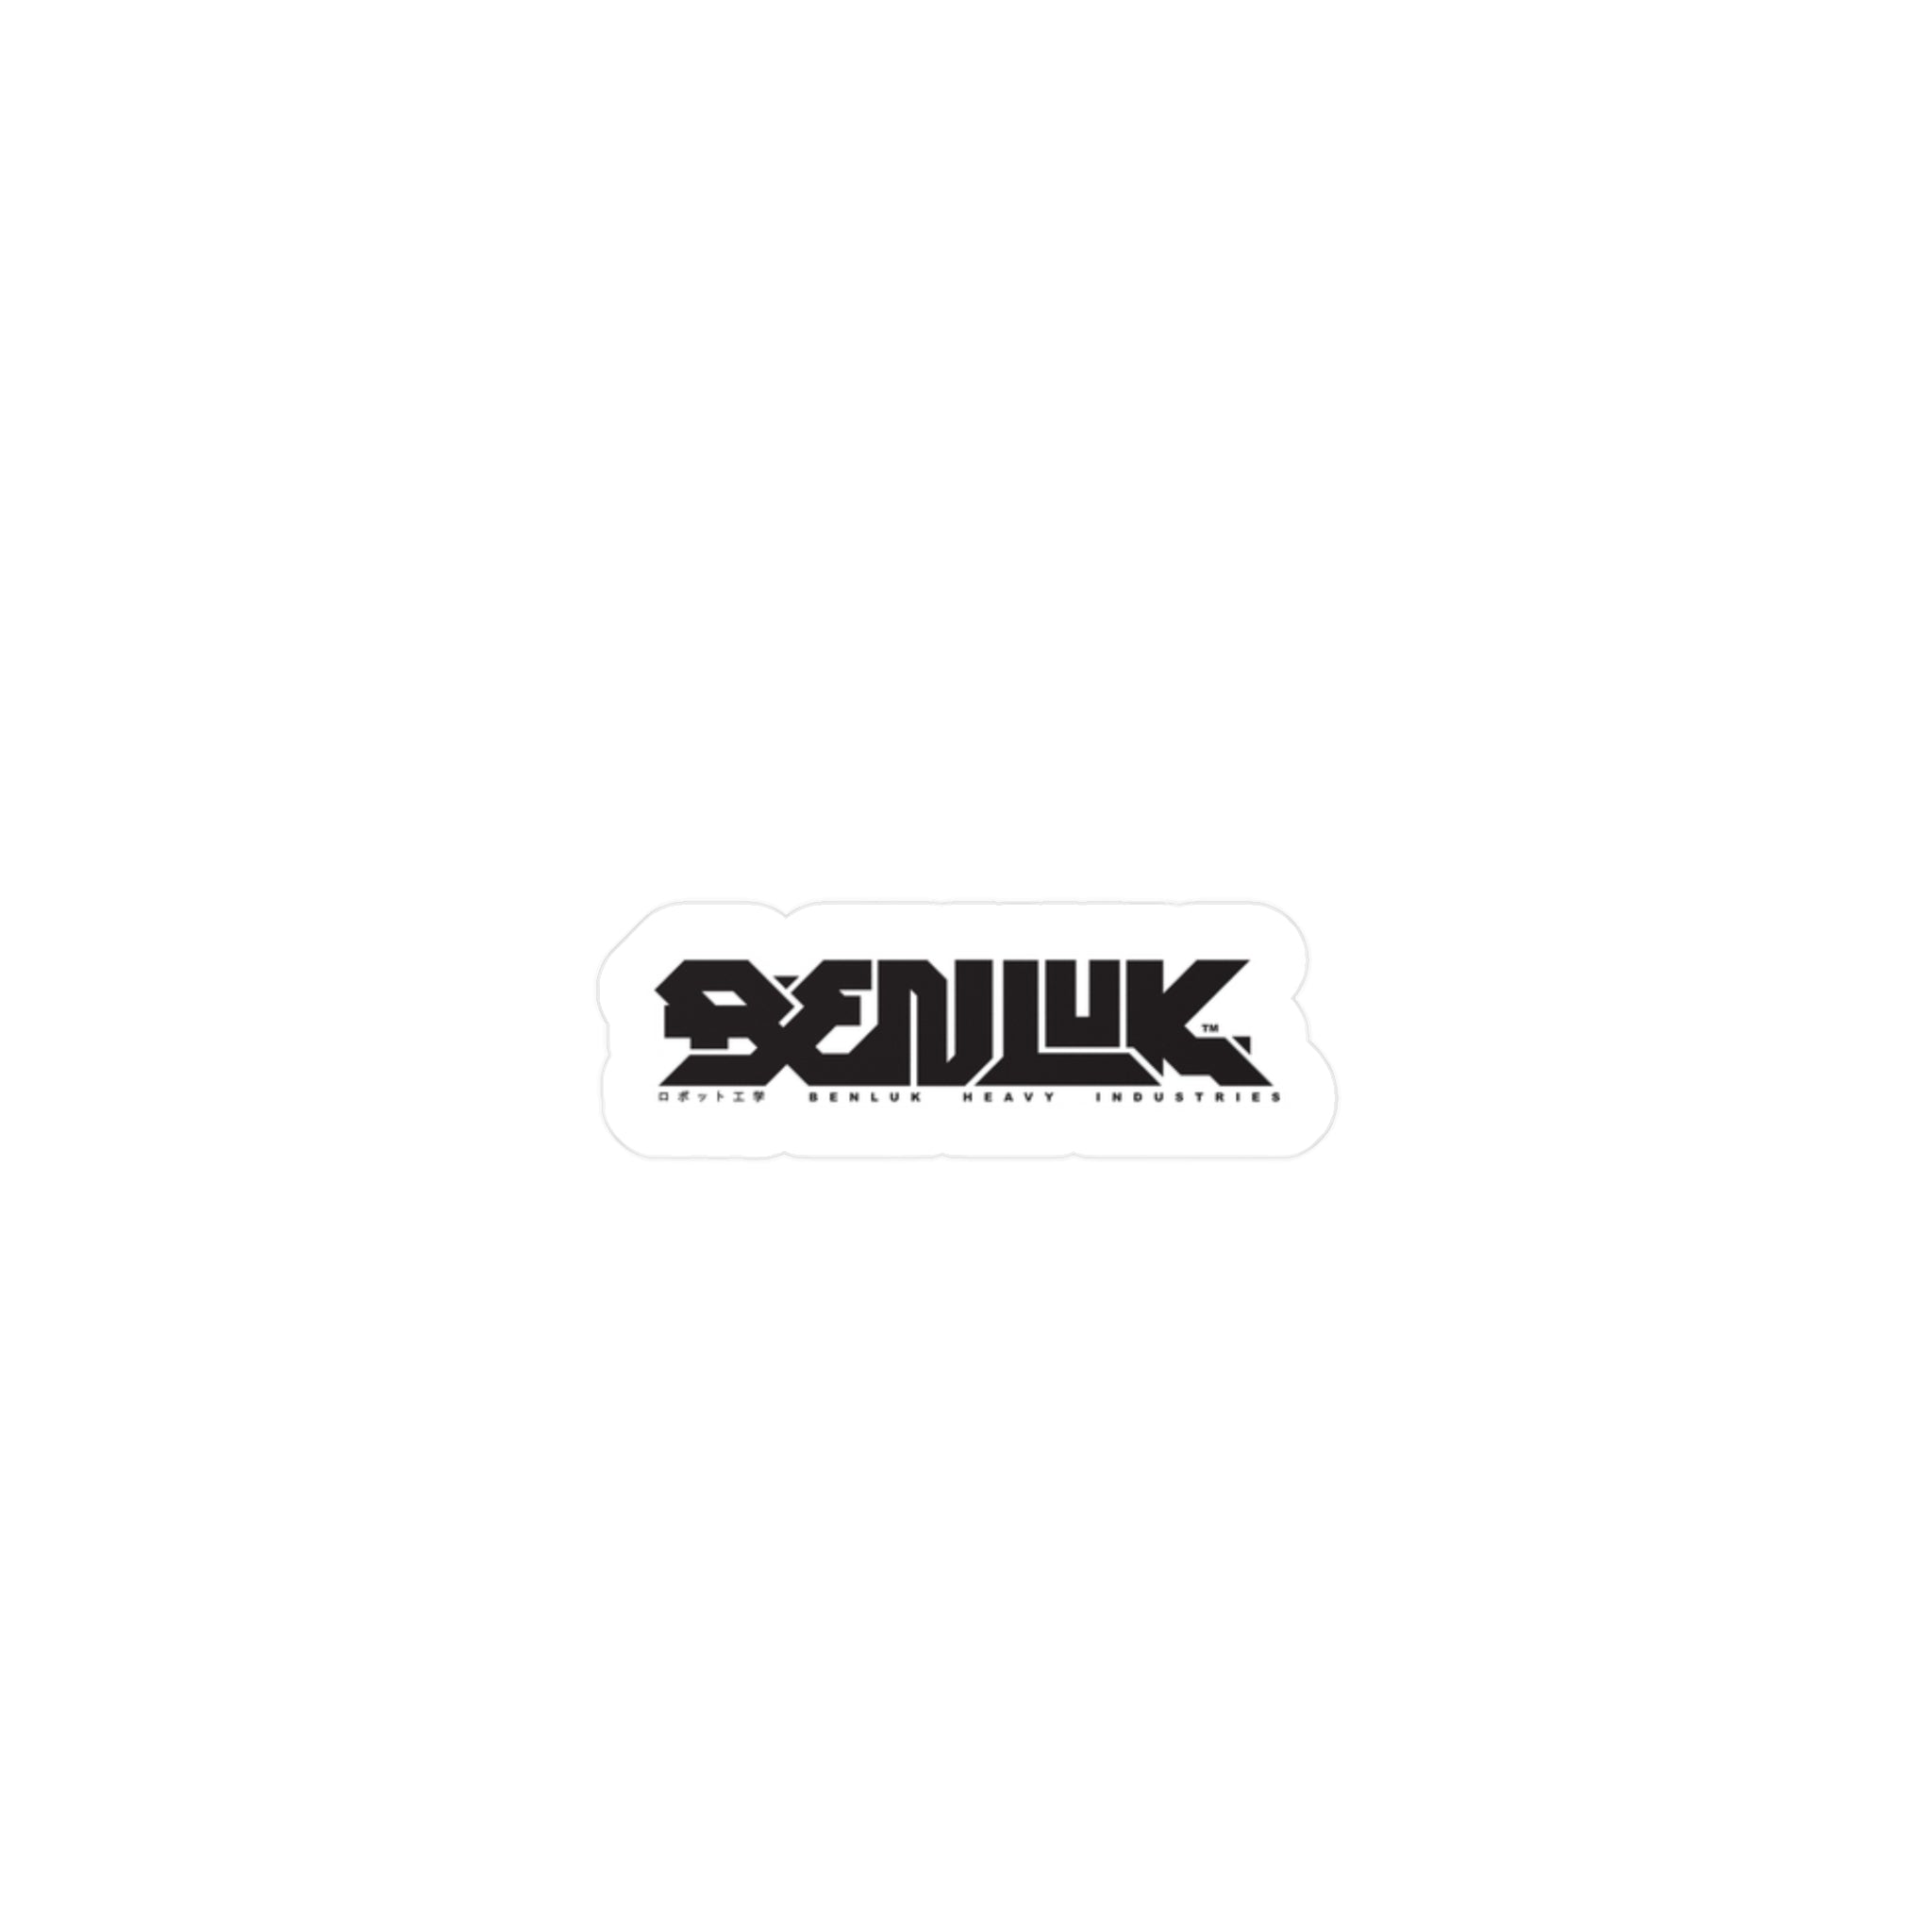 BENLUK Sticker